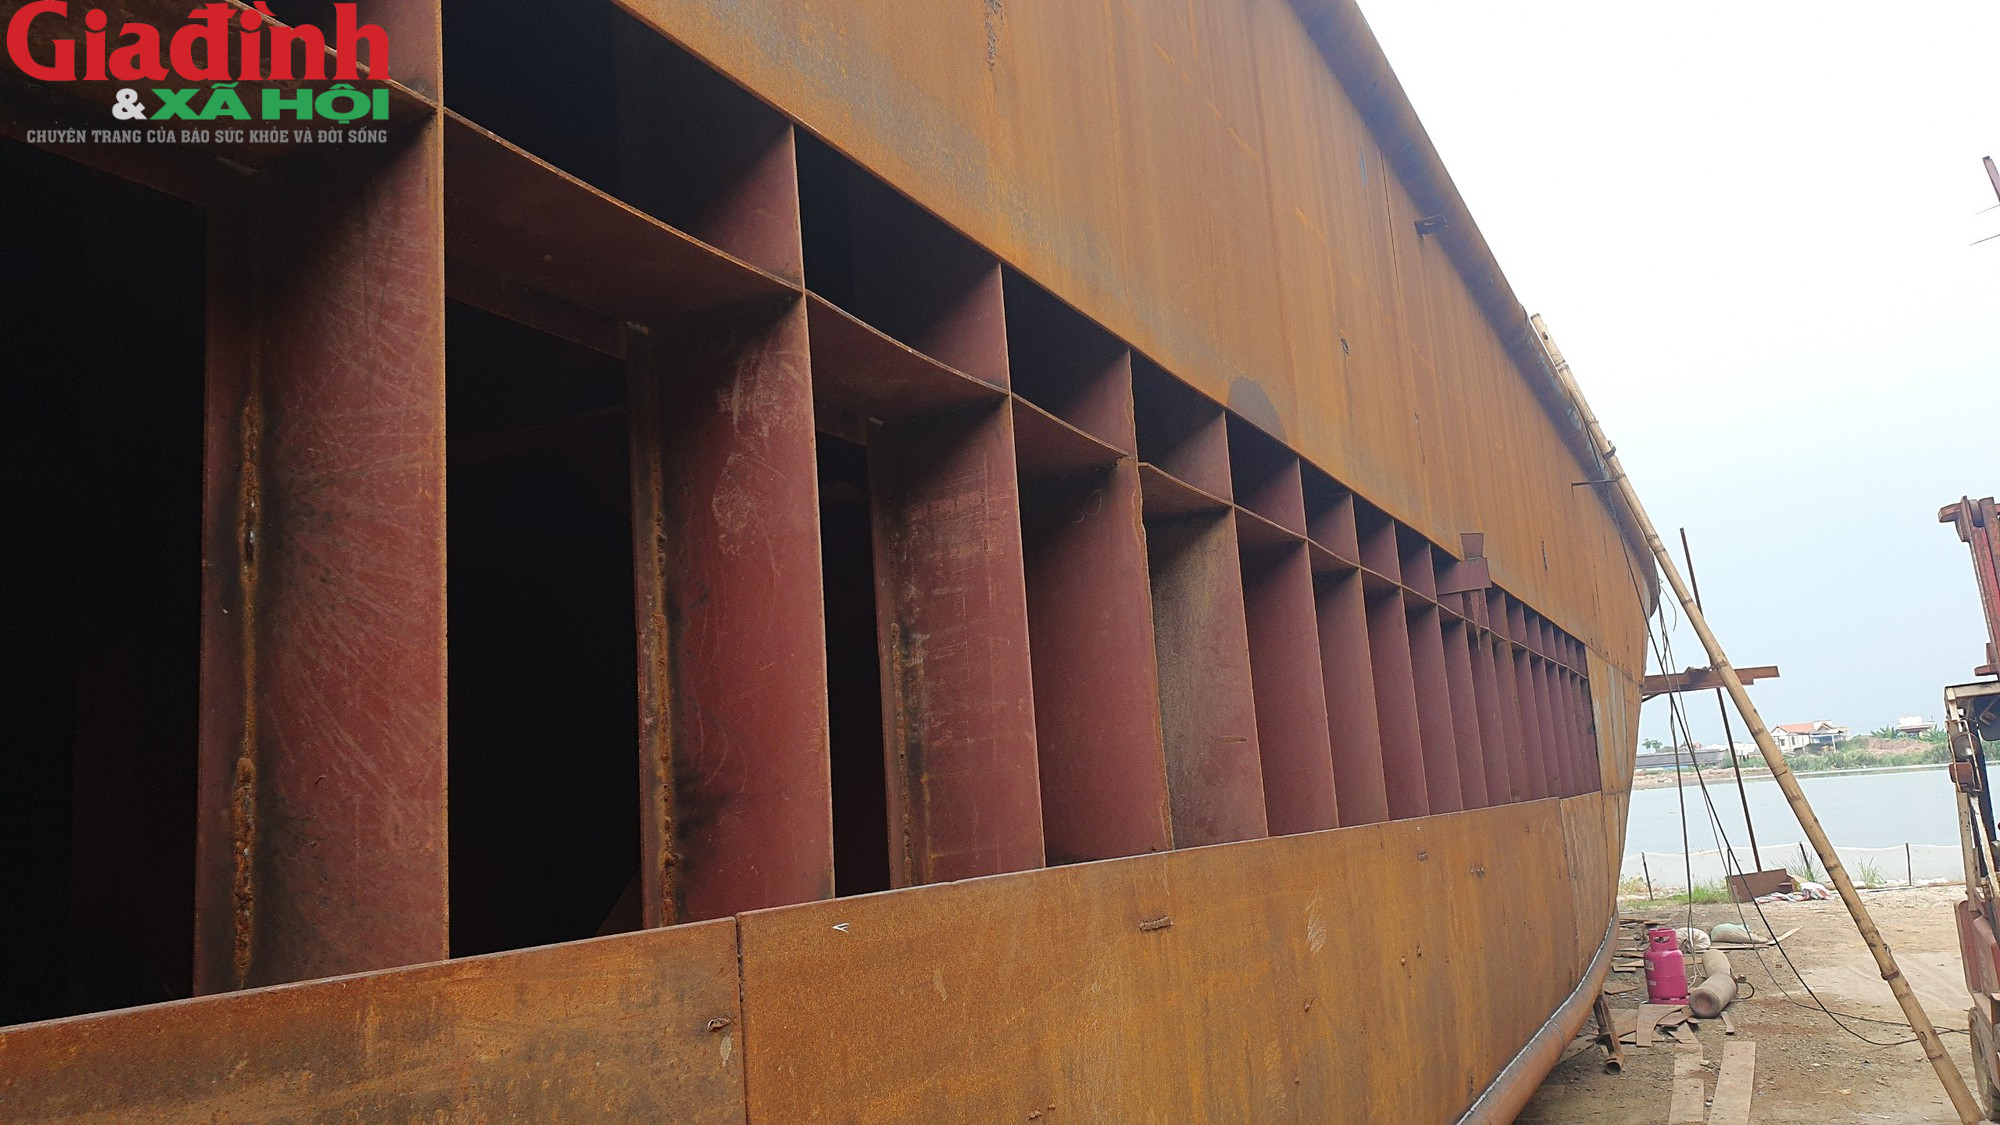 Những điều thú vị bên trong xưởng đóng tàu lớn nhất bên bờ sông Ninh Cơ ở Nam Định - Ảnh 7.